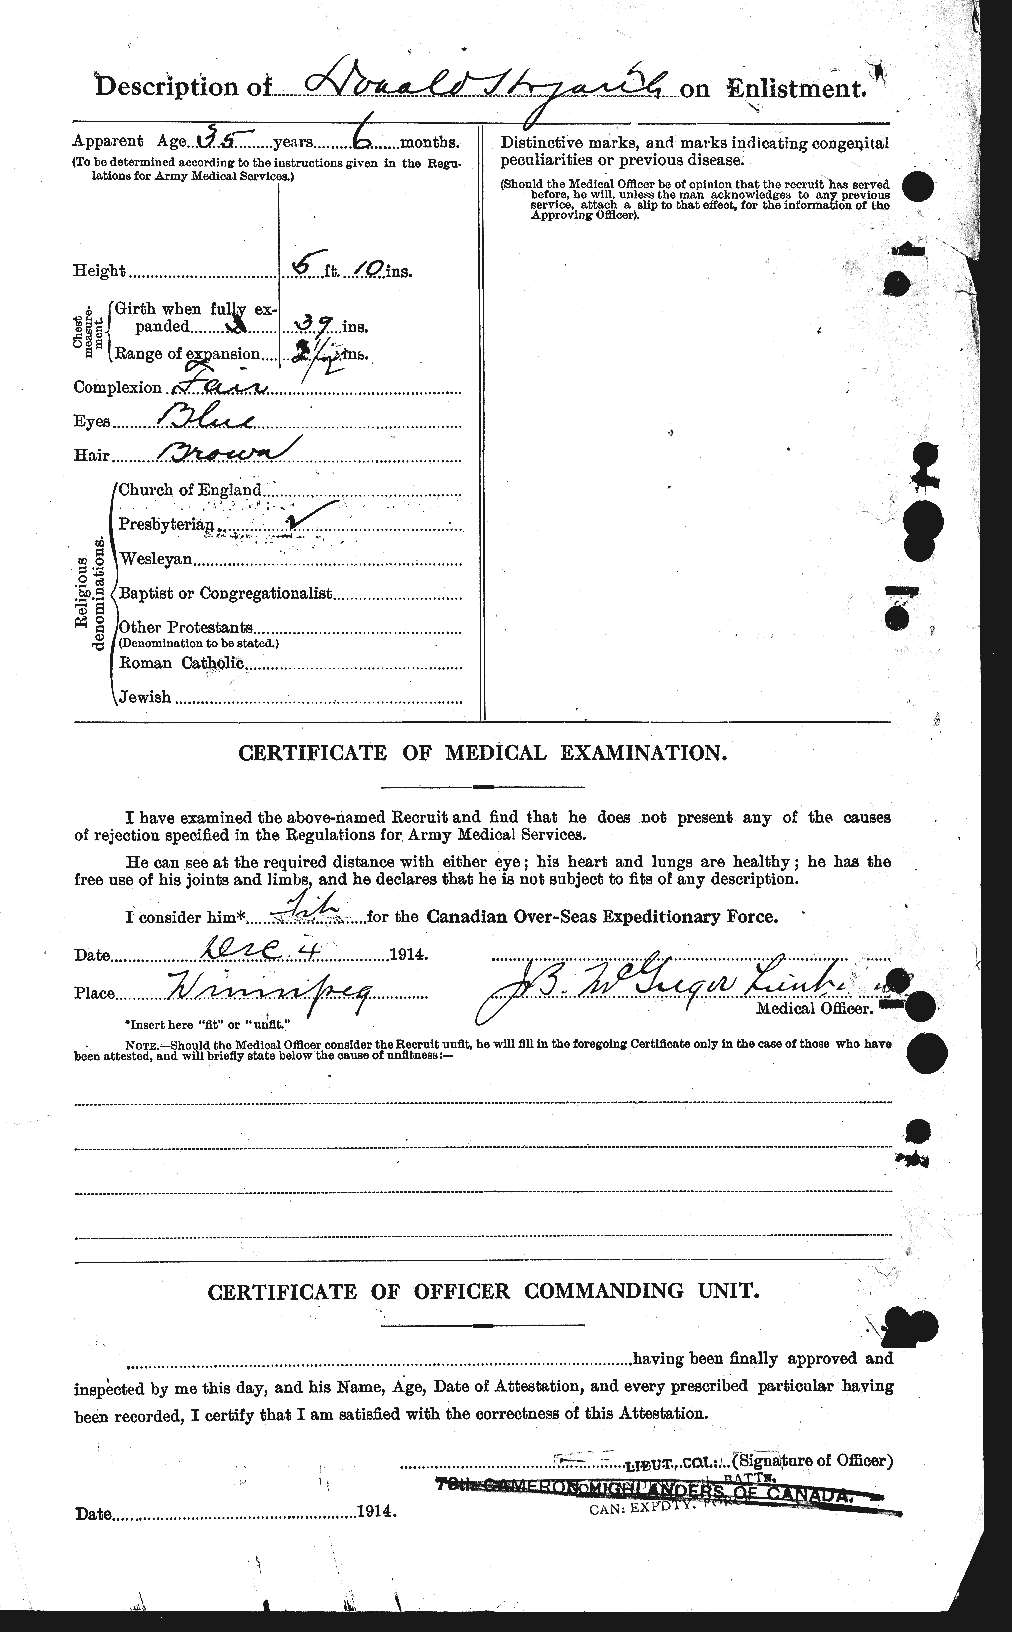 Dossiers du Personnel de la Première Guerre mondiale - CEC 400467b